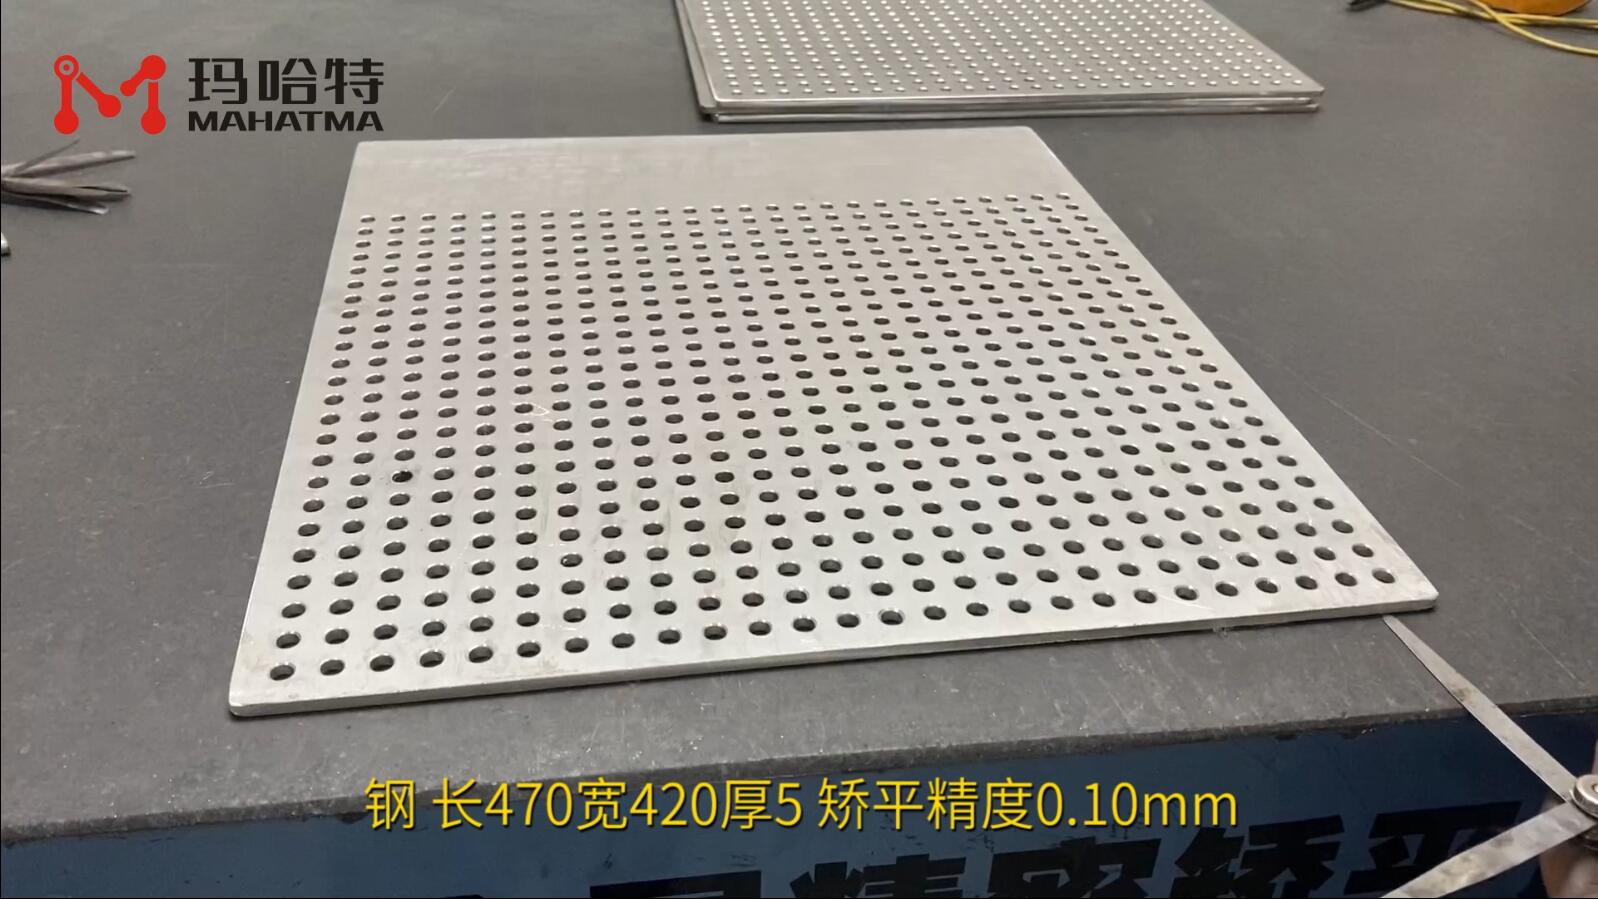 钢 MHT80-800 长方形 长470宽420厚5 矫平精度0.10mm